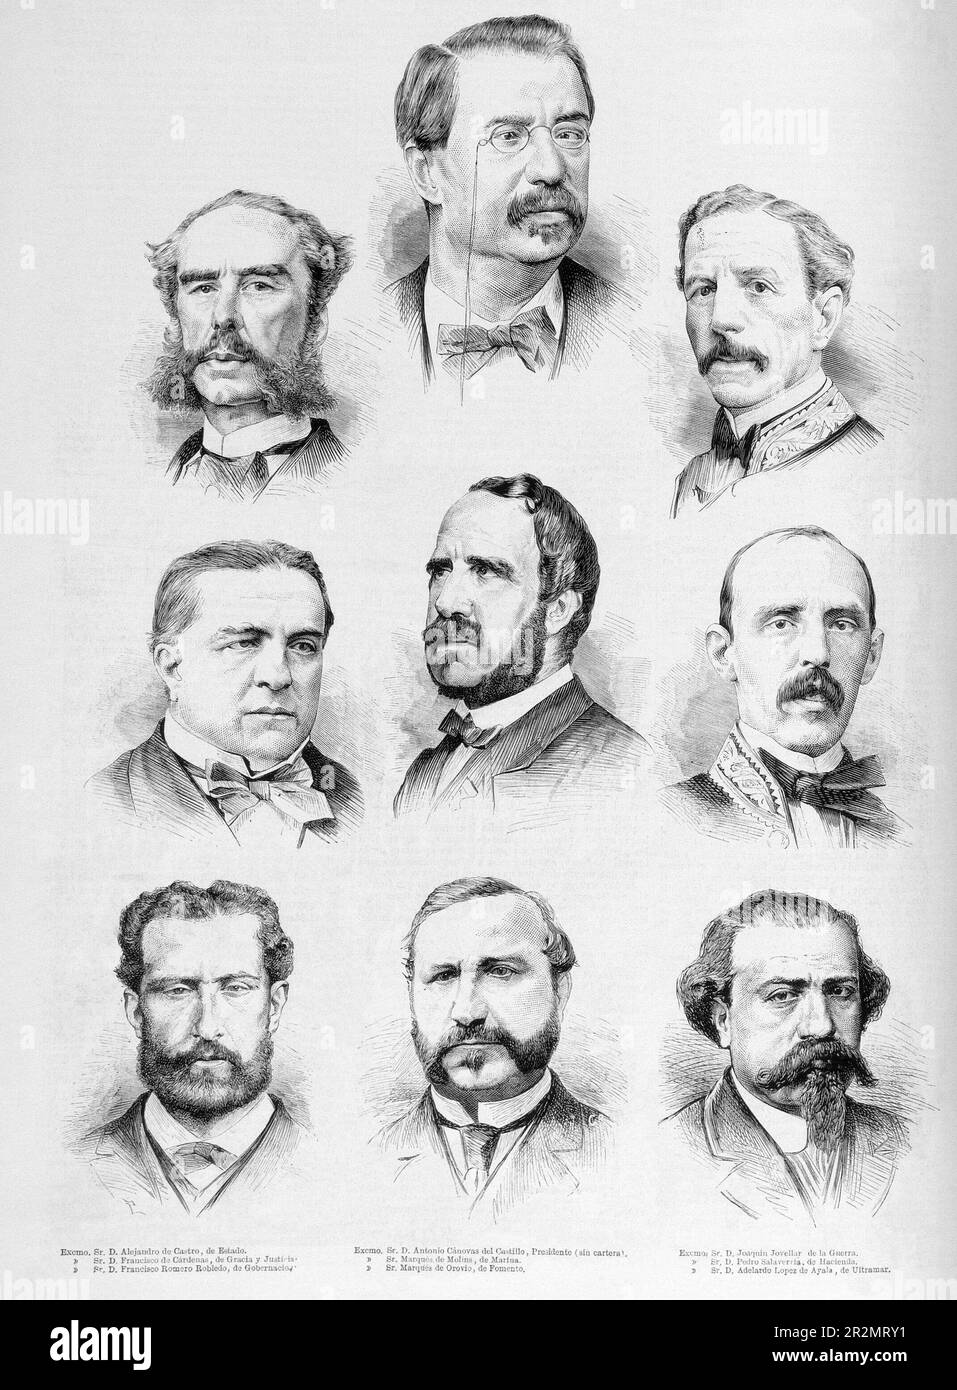 LA ILUSTRACION ESPAÑOLA Y AMERICANA Nº11 - 15/1/1875 - MINISTROS DE ALFONSO XII EN ENERO DE 1875. Location: SENADO-BIBLIOTECA-COLECCION. MADRID. SPAIN. ADELARDO LOPEZ DE AYALA (1828-1879). ANTONIO CANOVAS DEL CASTILLO (1828-1897). MARIANO ROCA TOGORES-MARQUES DE MOLINS. FRANCISCO ROMERO ROBLEDO (1838-1906). MANUEL OROVIO ECHAGUE MARQUES DE OROVIO. JOAQUIN JOVELLAR SOLER (1819-1892). ALEJANDRO DE CASTRO Y CASAL (1812-1881). FRANCISCO DE CARDENAS ESPEJO (1817-1898). PEDRO SALAVERRIA Y CHARITU (1821-1896). Stock Photo